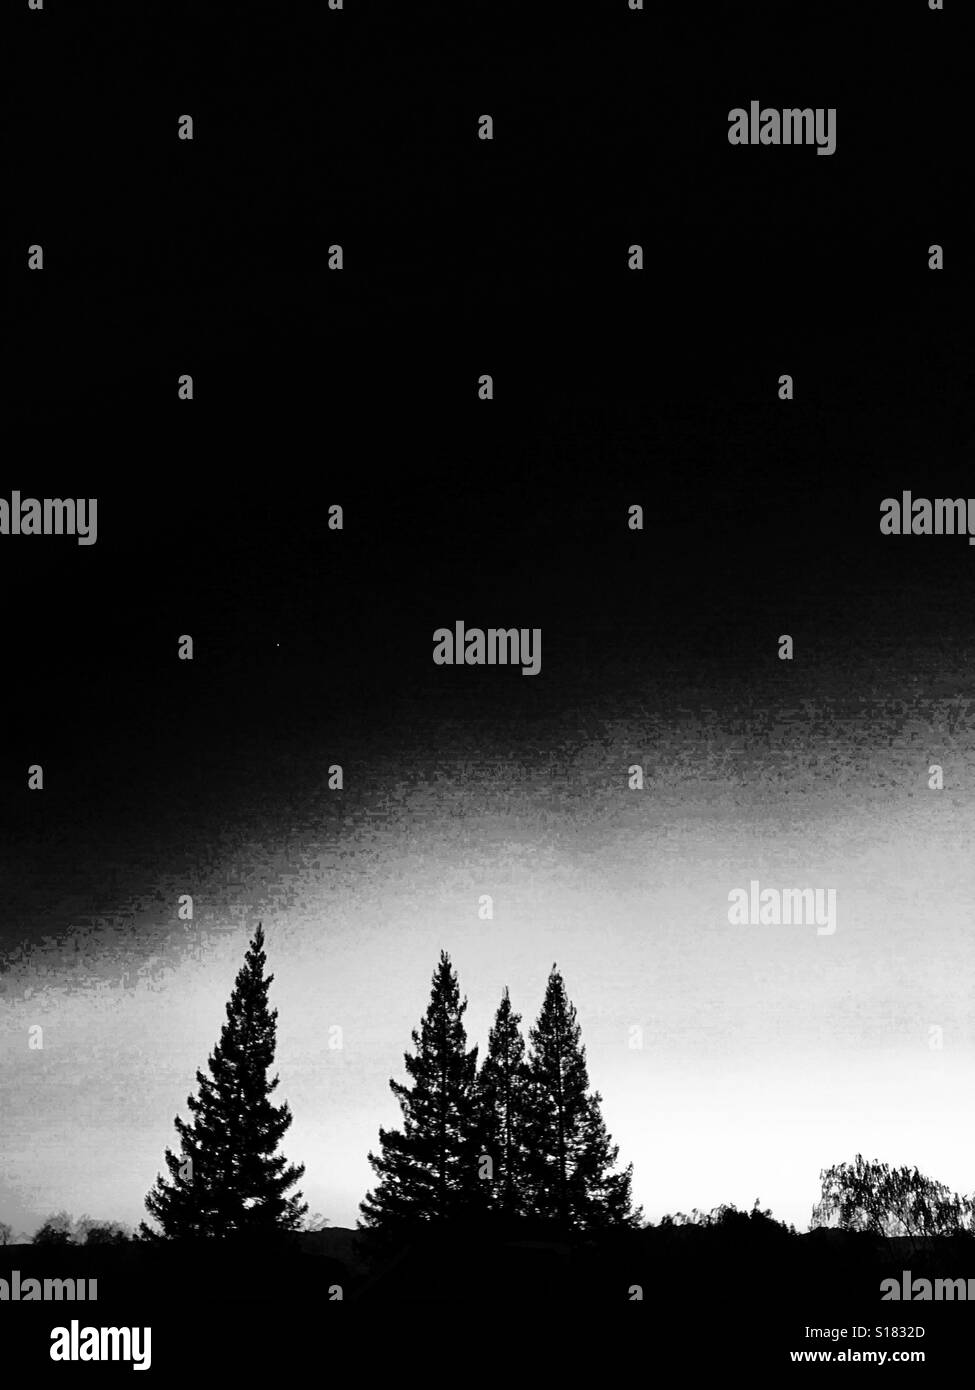 Eveming Skyscape über Mammutbäume, in schwarz und weiß Stockfoto